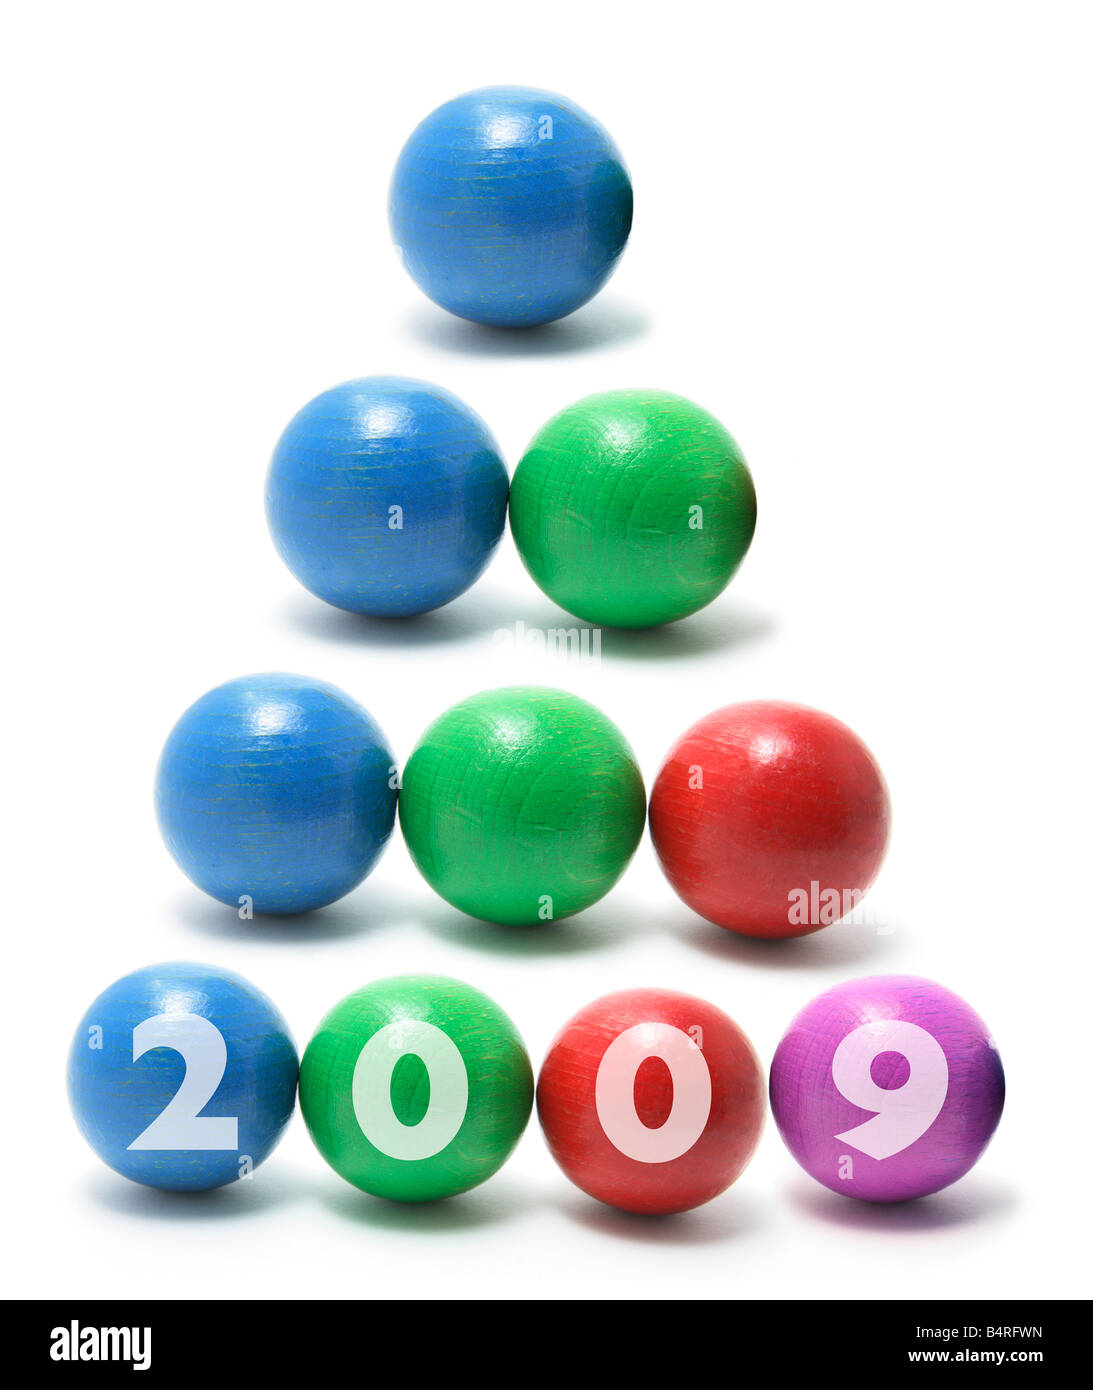 Balles de jonglage avec 2009 Banque D'Images